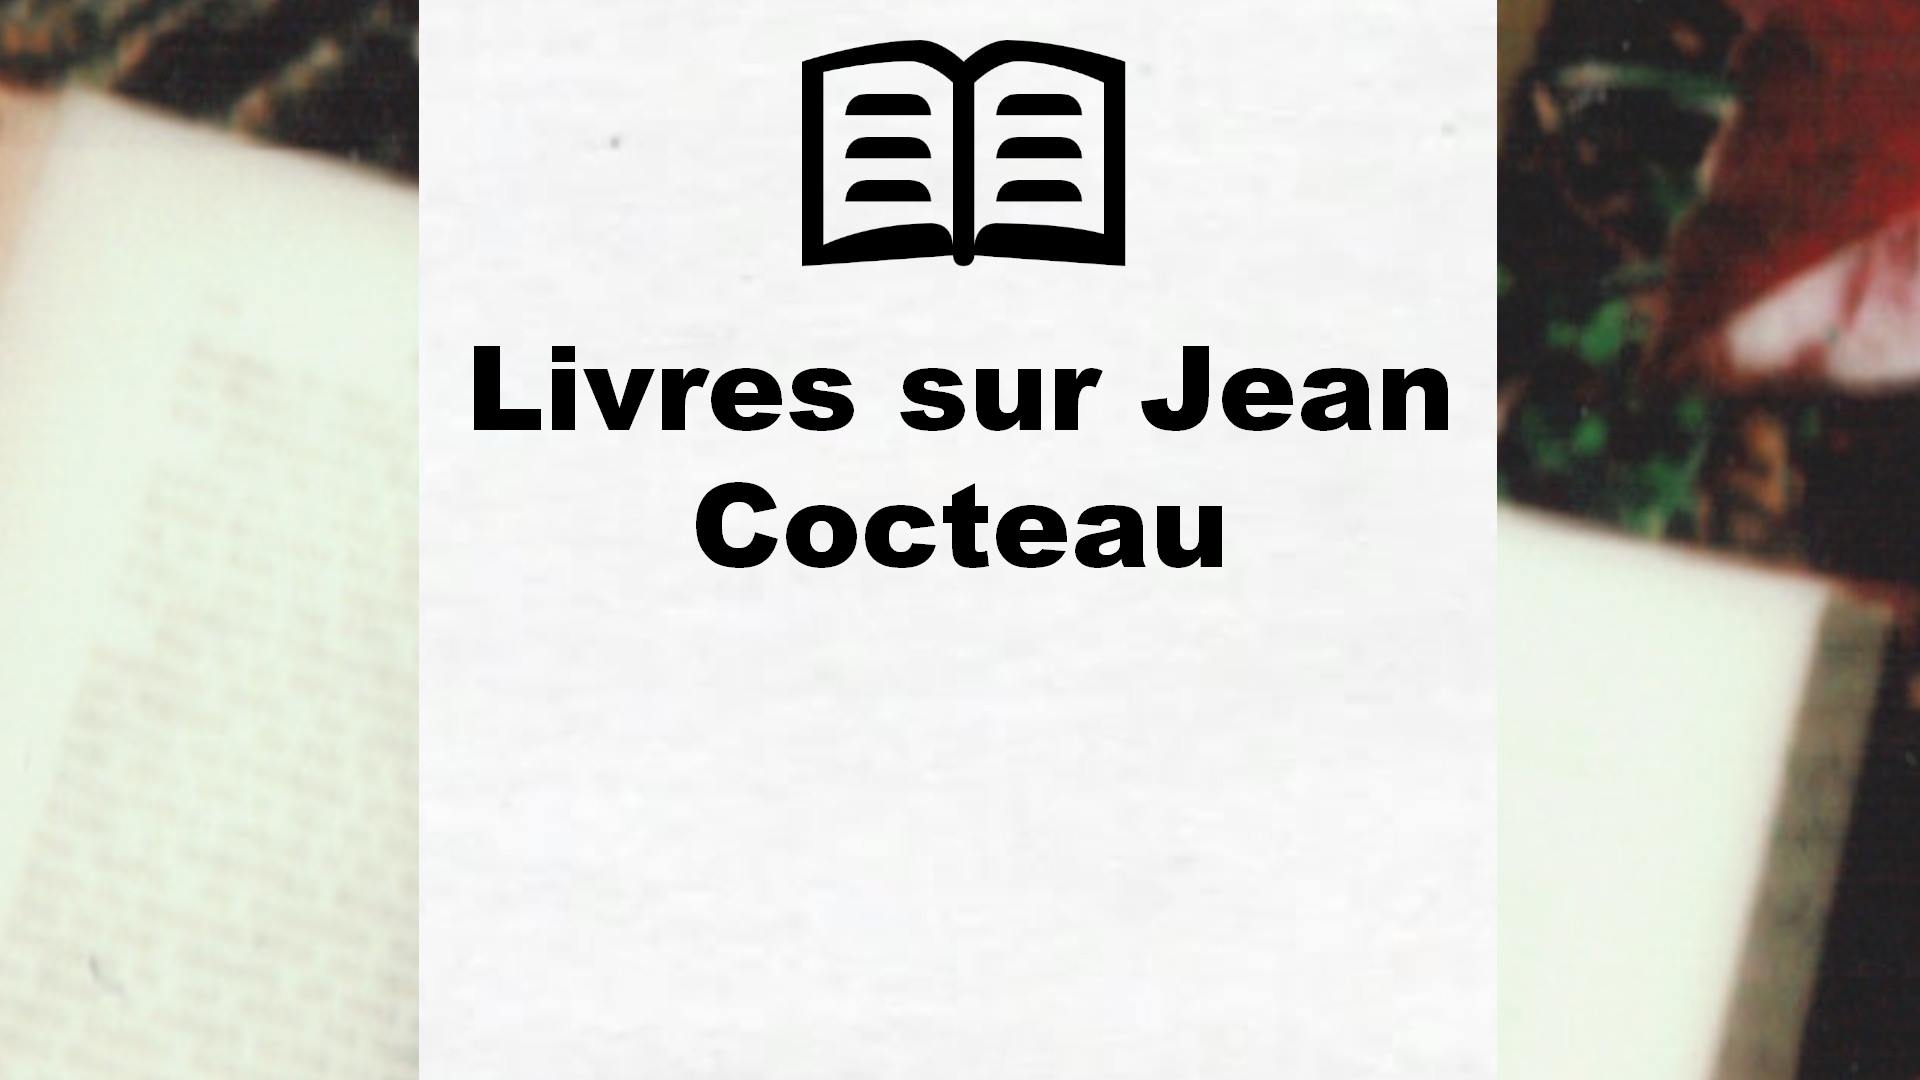 Livres sur Jean Cocteau